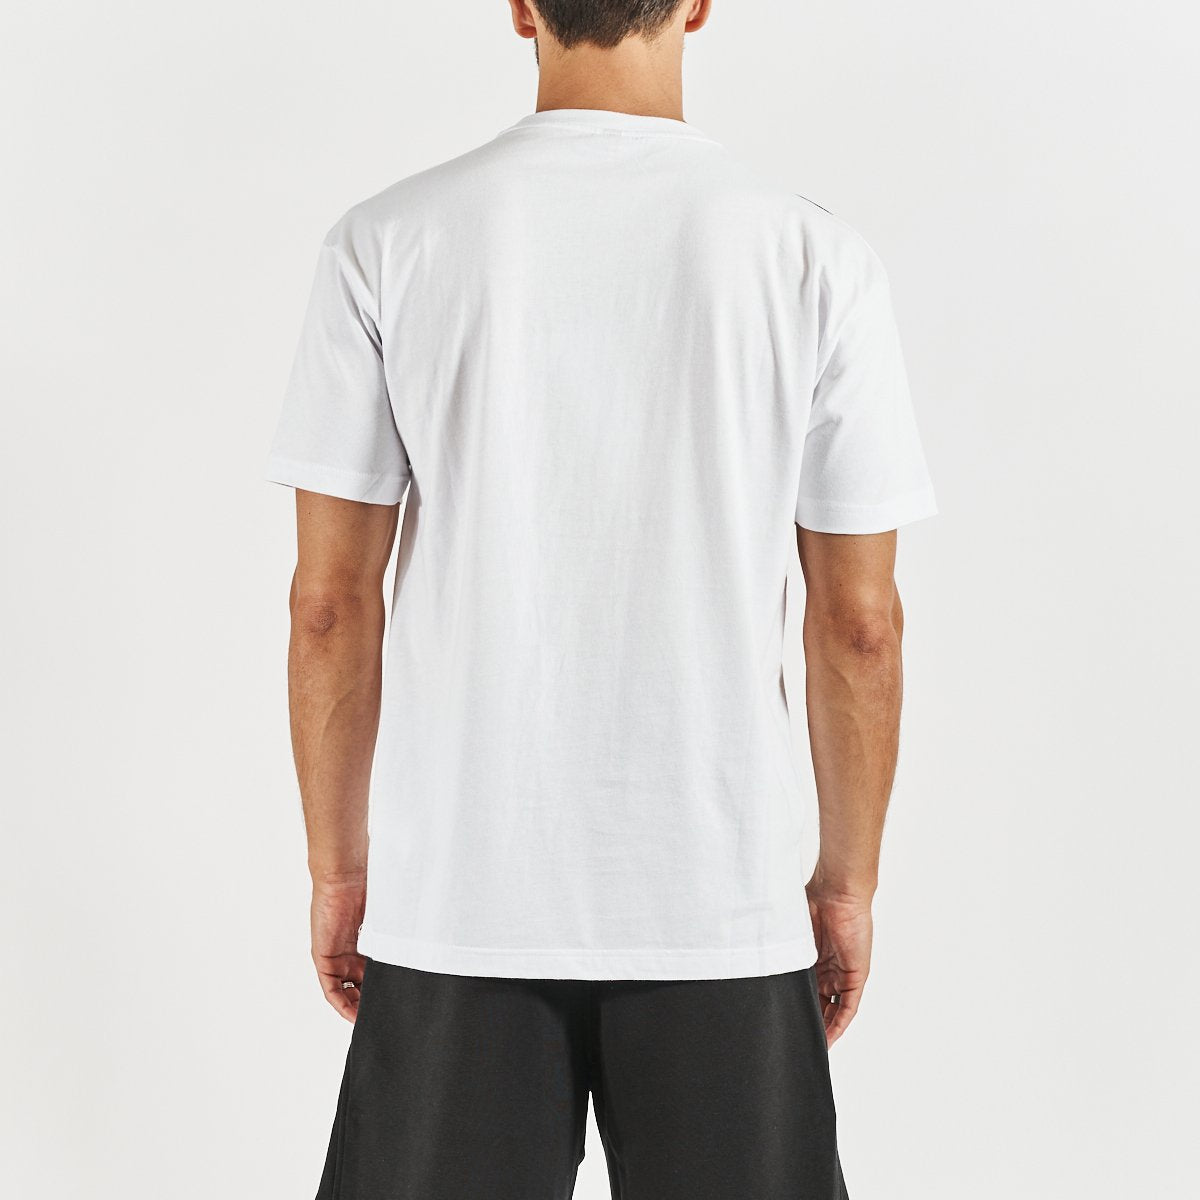 Camiseta Ecop hombre blanco - Imagen 3